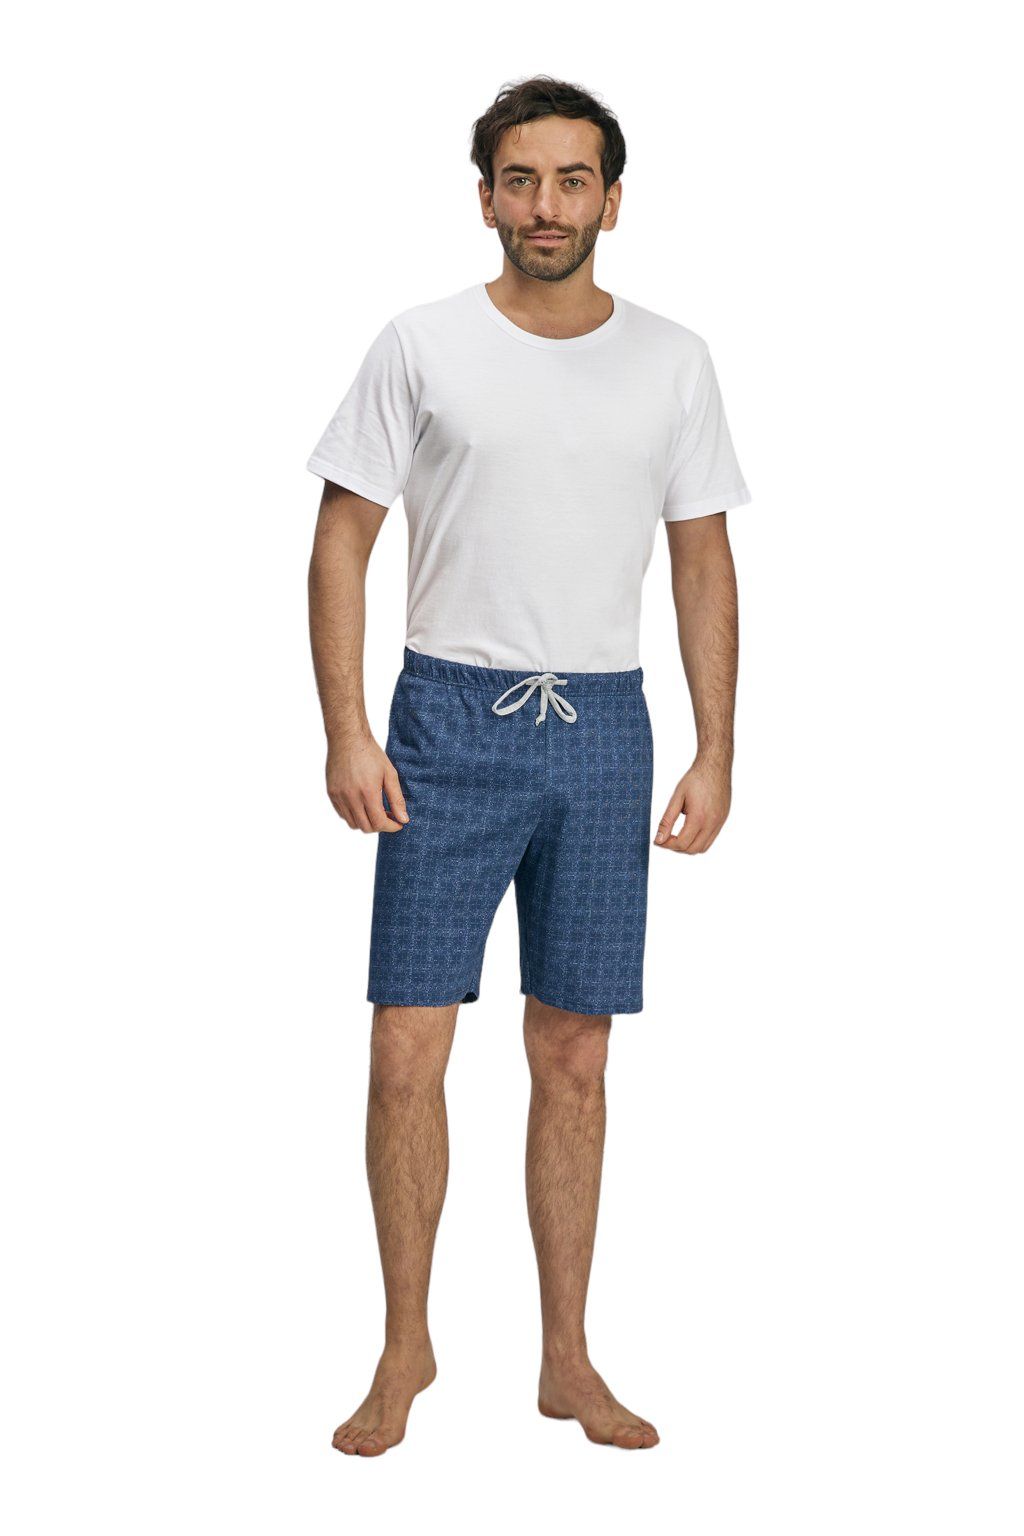 Pánské pyžamové kalhoty s krátkými nohavicemi, 204123 466, modrá Wadima